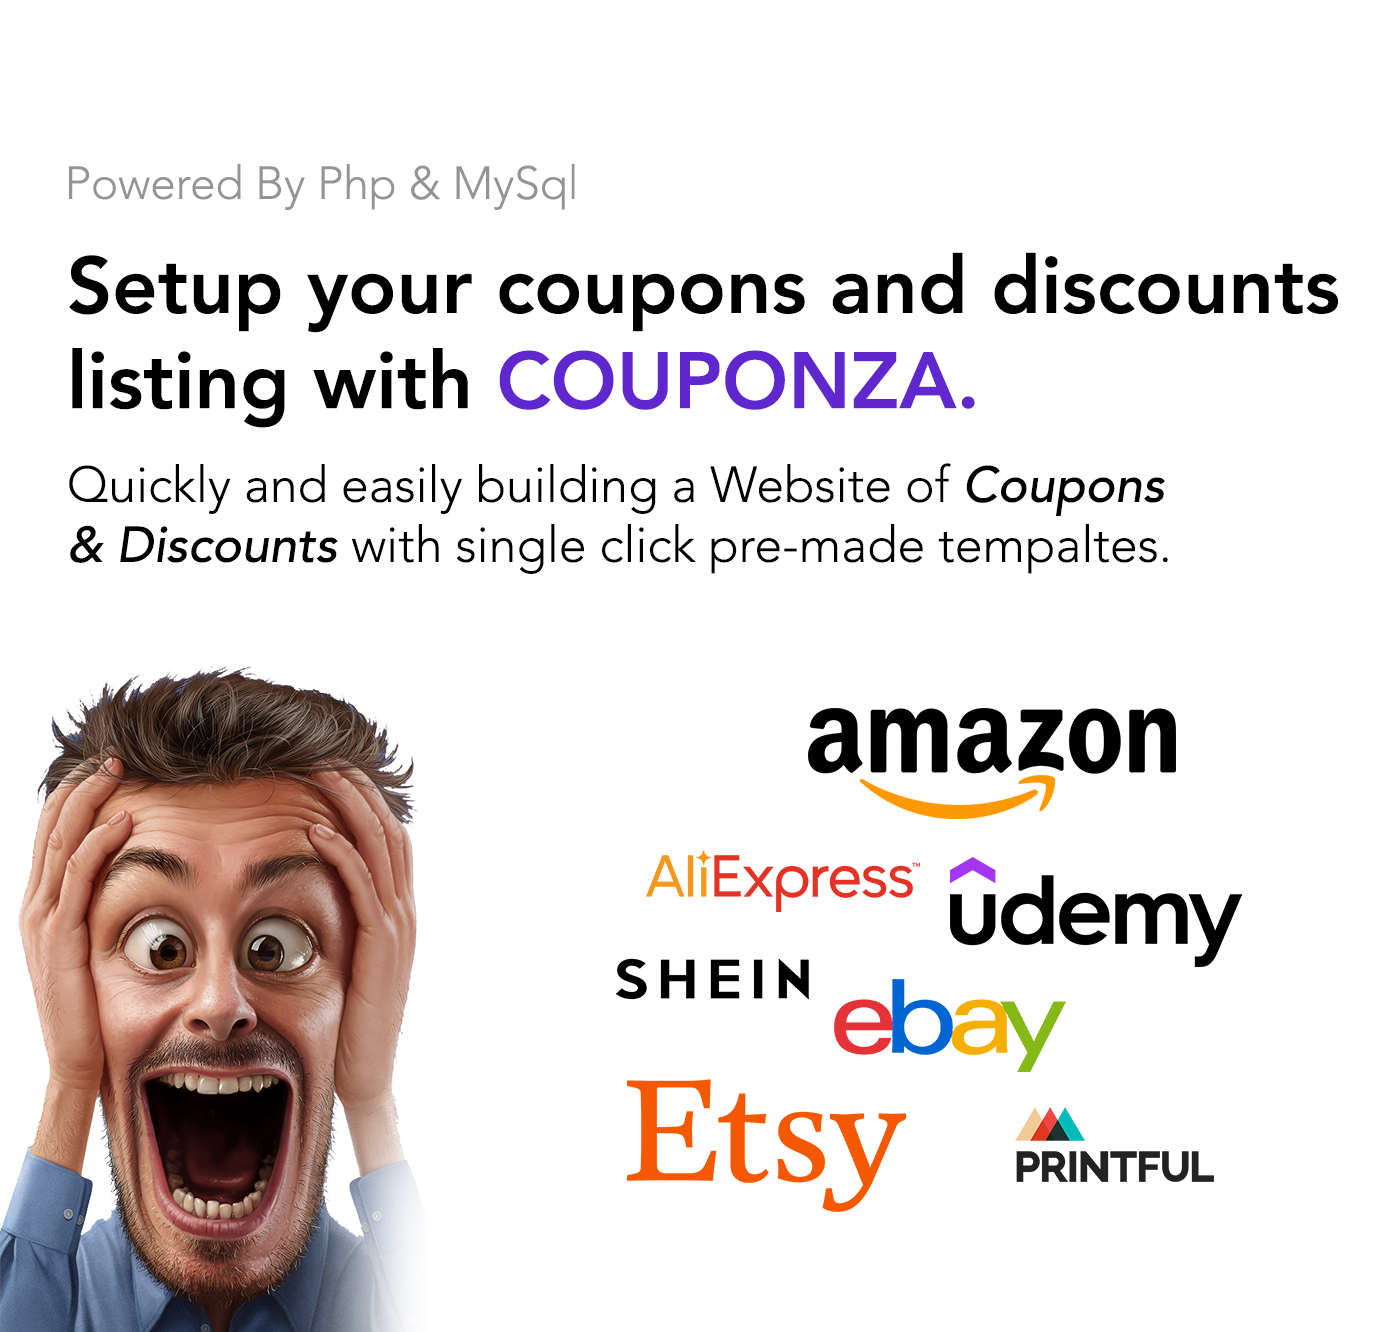 Couponza- Ultimate Coupons & Discounts Platform - 10